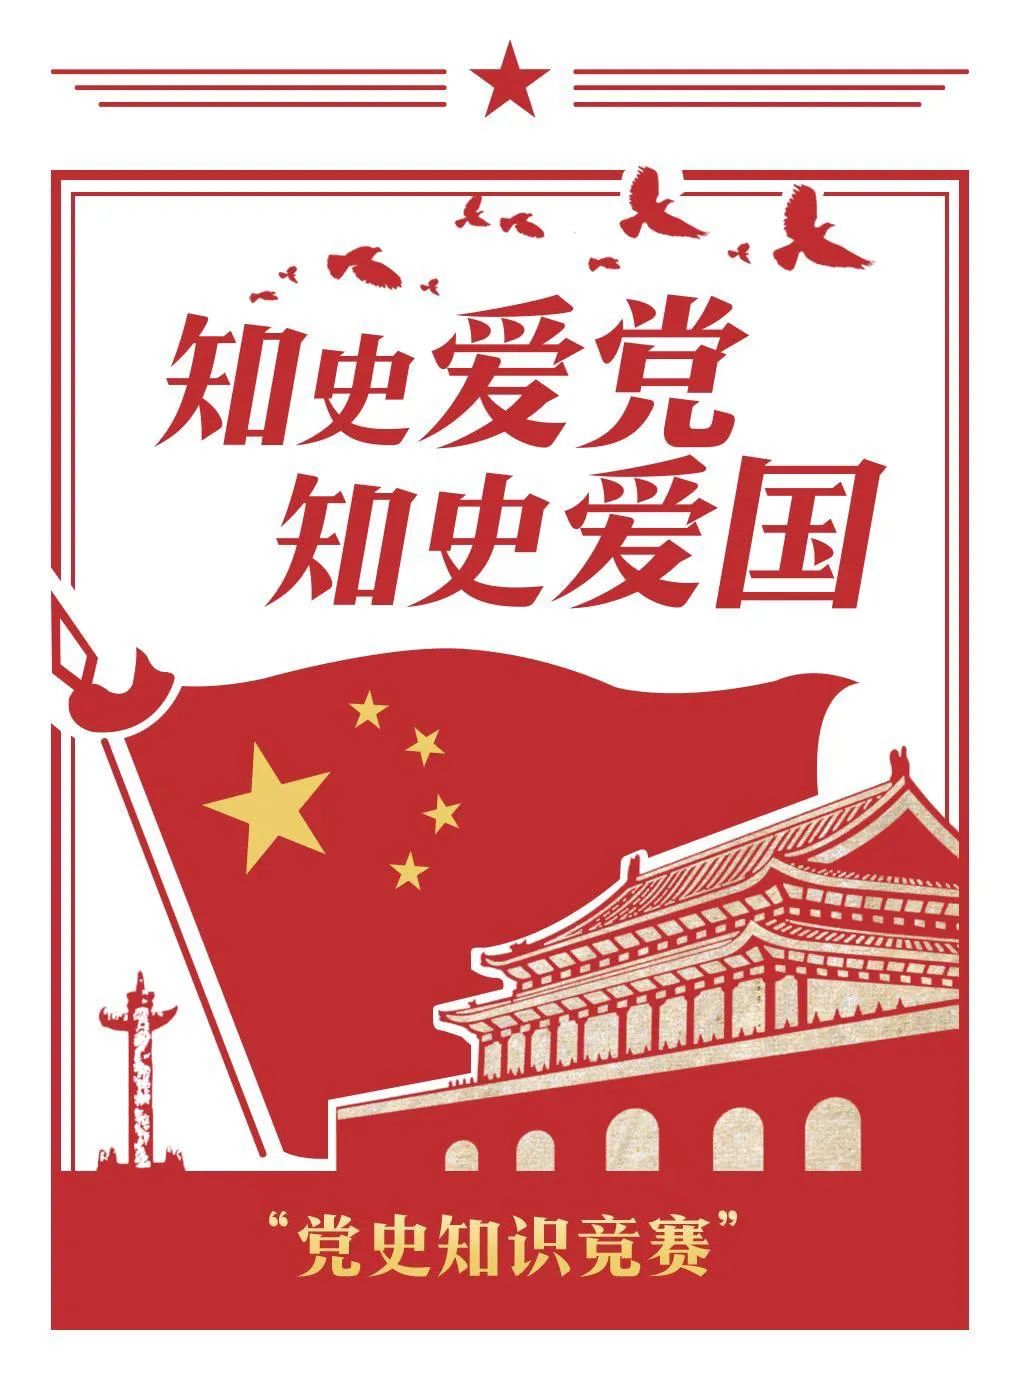 建党100周年活动集锦|庆祝中国共产党成立100周年主题活动集锦（第一期） 资讯动态 第5张